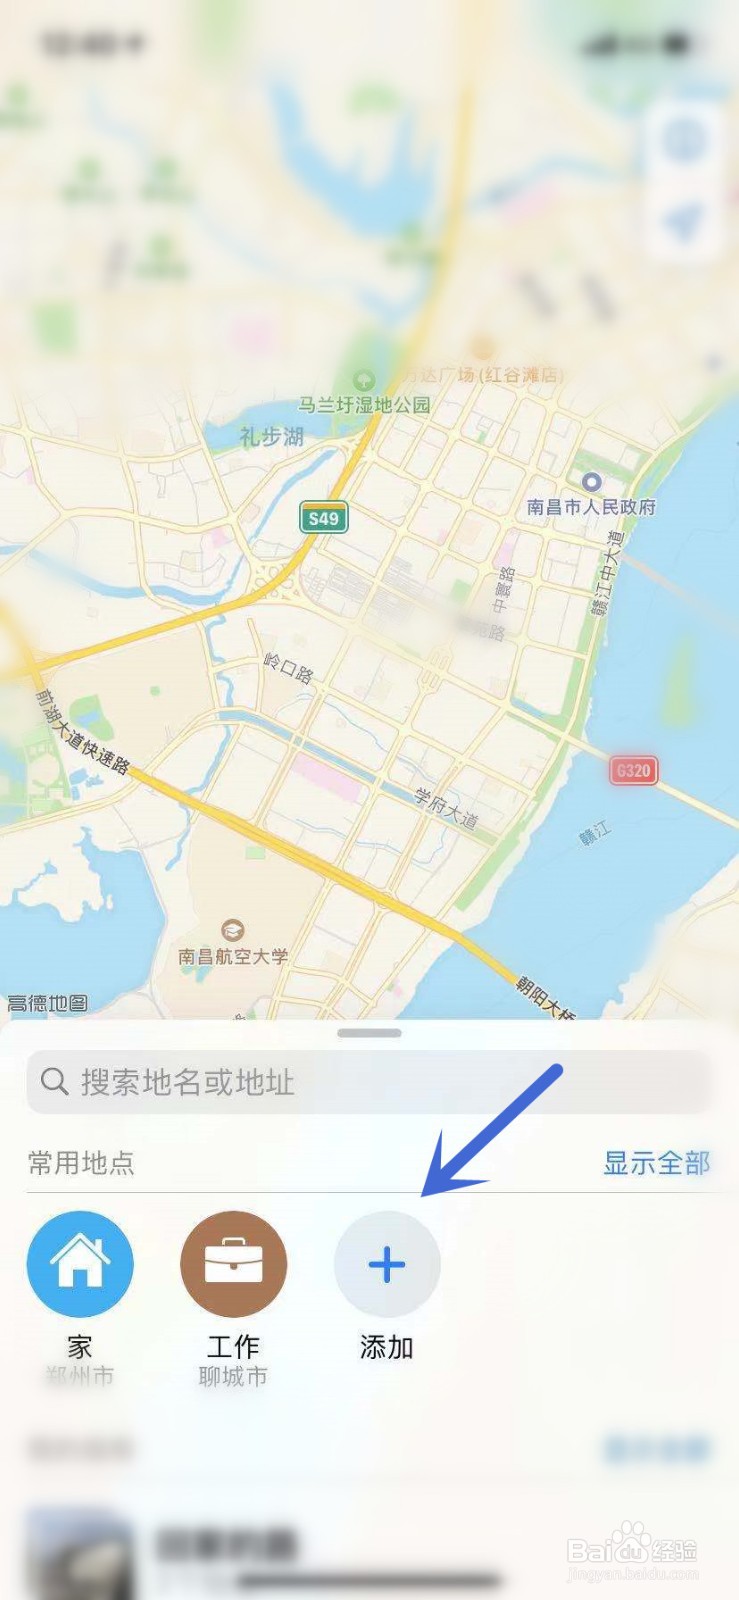 苹果手机自带的地图保存常用导航地点